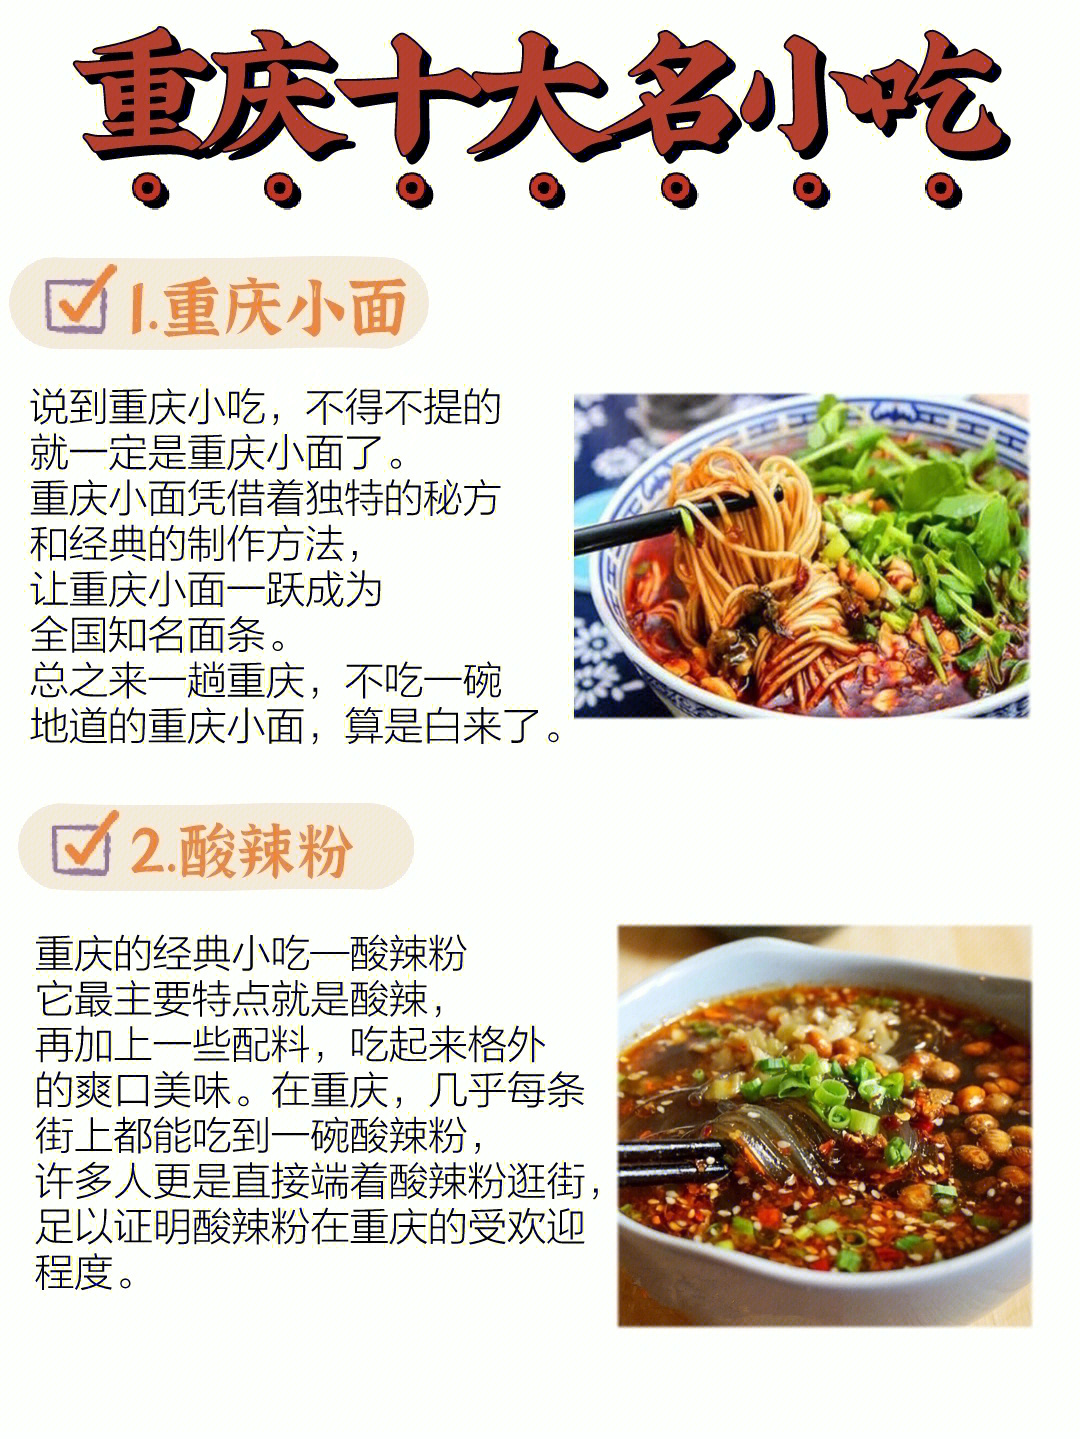 重庆美食图片及介绍图片